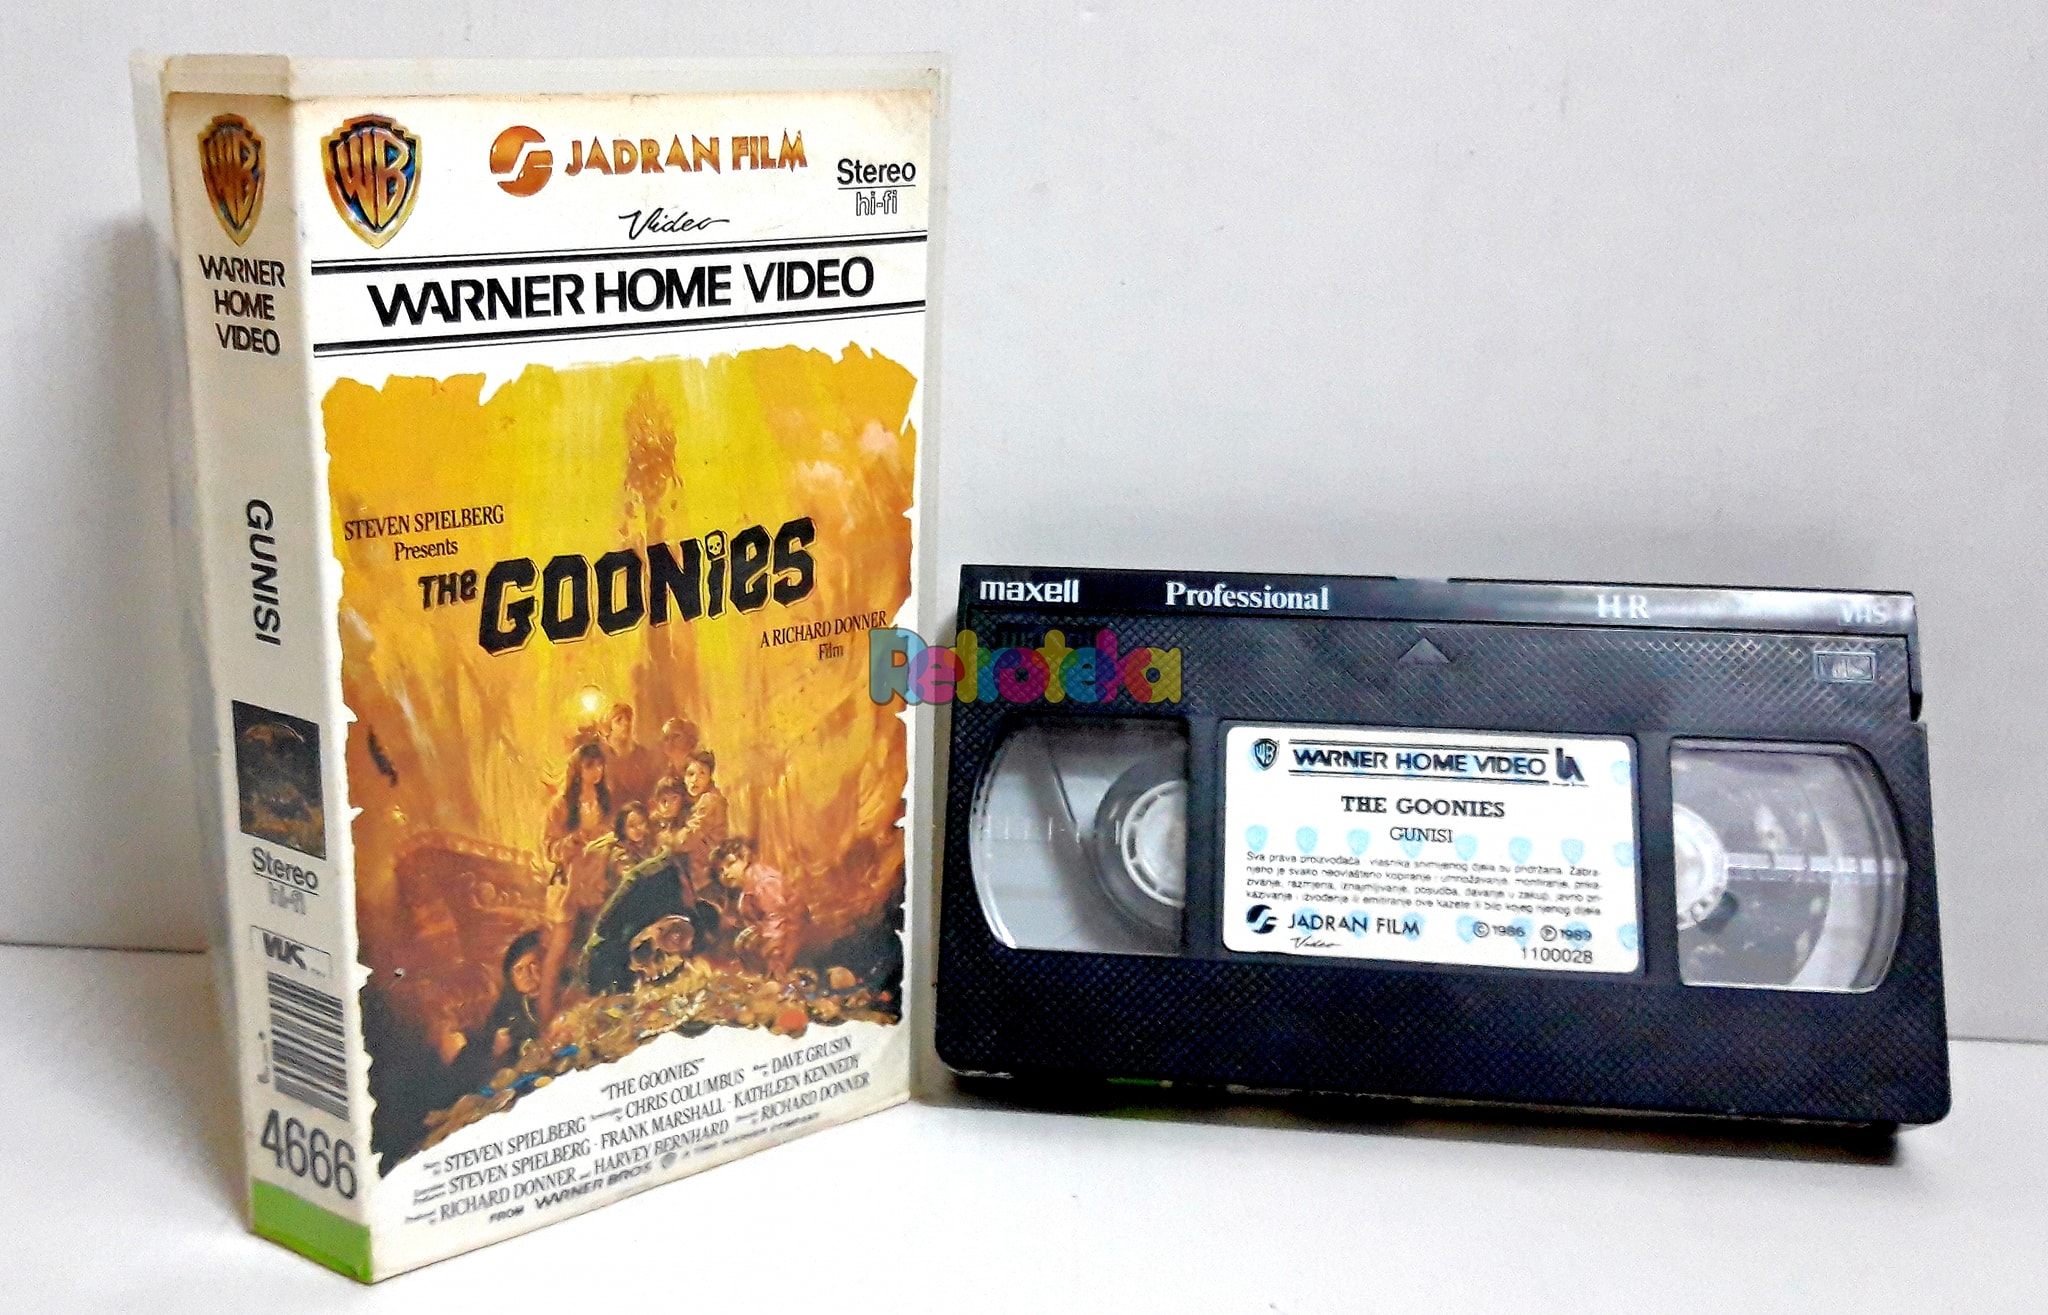 Pustolovni film Goonies iz 1985. godine, koji prati dječake iz Goon Docksa i njihov, naizgled, posljednjih vikend u svojem kvartu, sigurno je jedan od pamtljivijih filmova mnogih djetinjstva. I danas ga ljudi obožavaju.